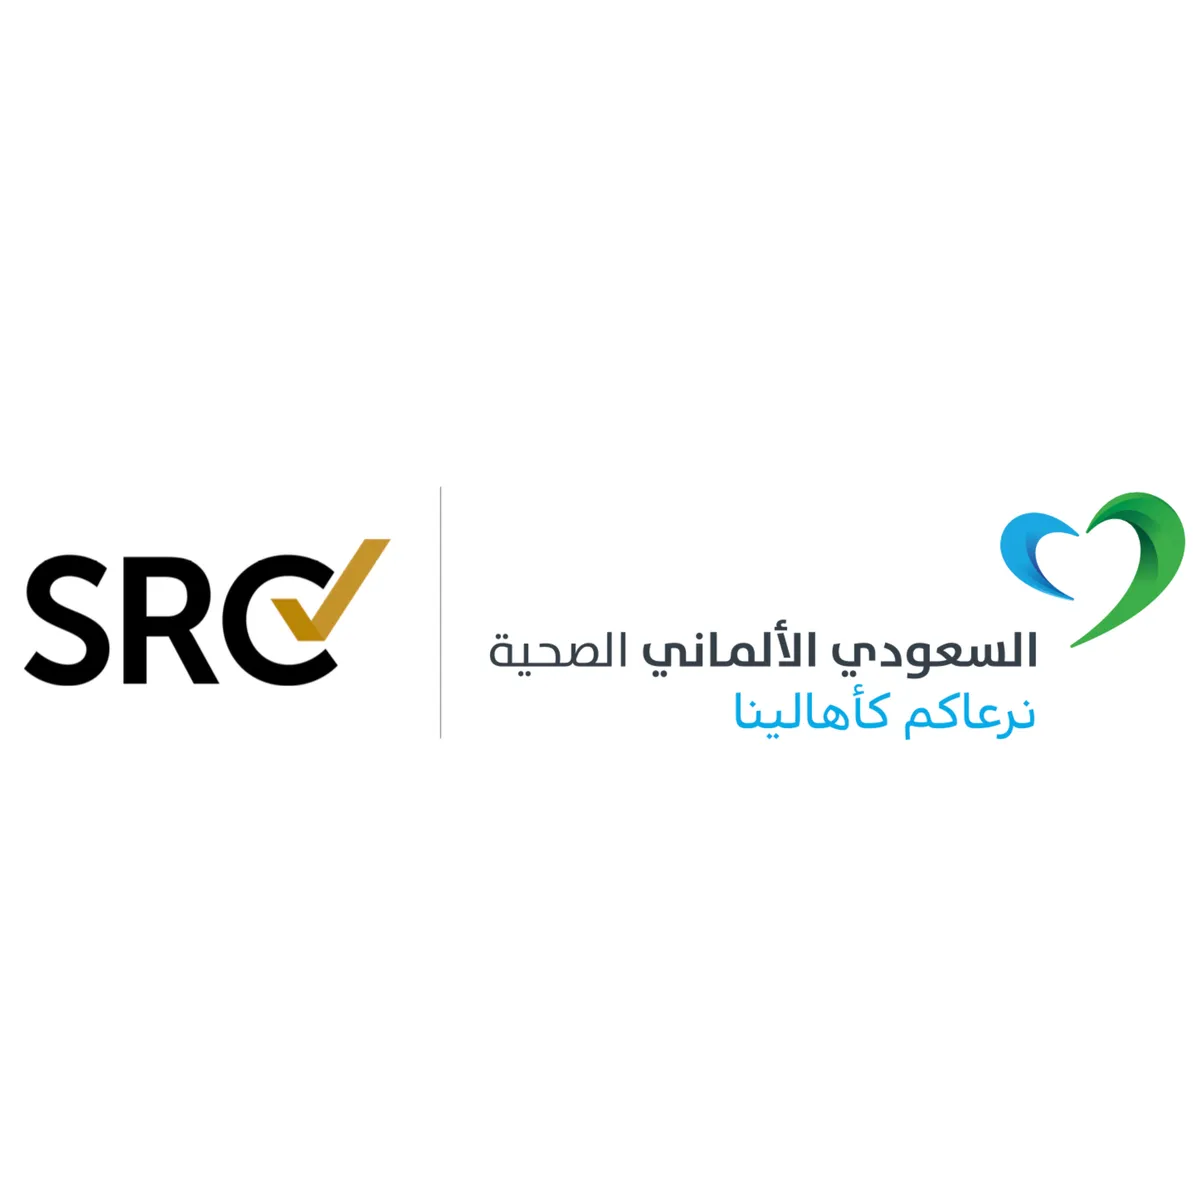 المستشفى السعودي الألماني في الدمام يحصل على اعتماد “مركز التميز في جراحة السمنة واضطرابات الأيض” من مؤسسة المراجعة الجراحية (SRC)